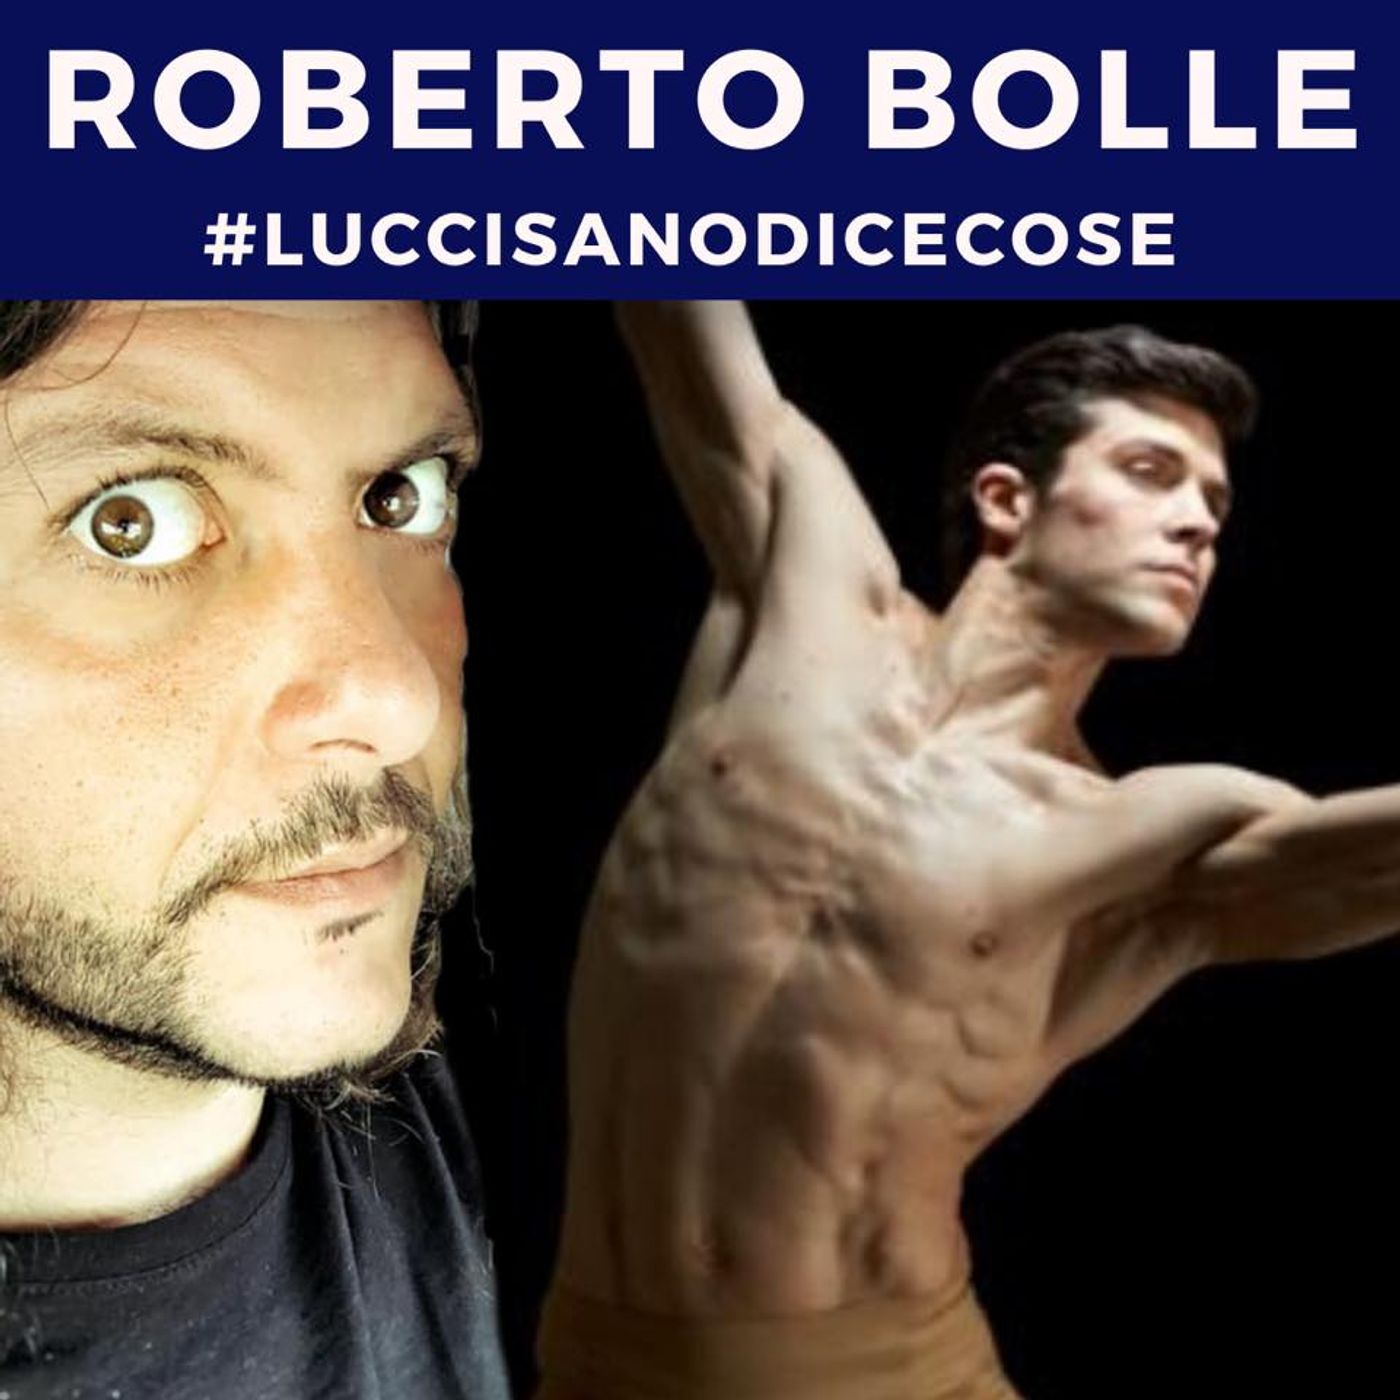 Roberto Bolle - by Emiliano Luccisano